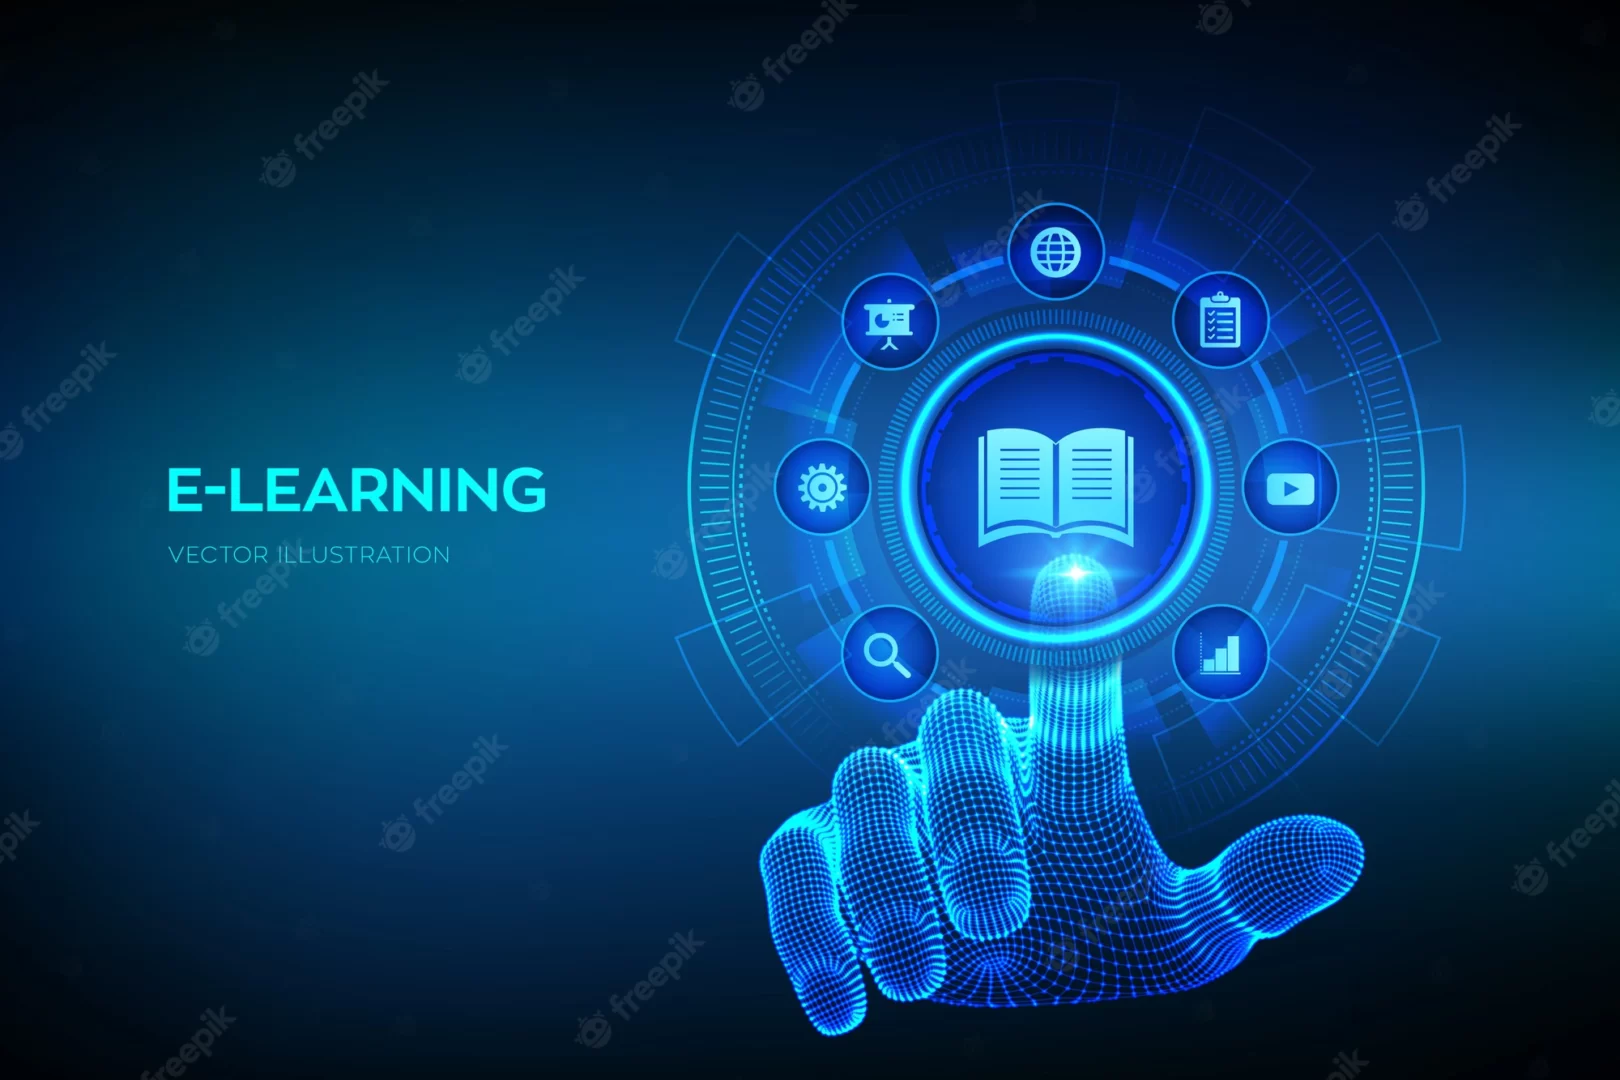 Thiết kế  bài giảng E-Learning